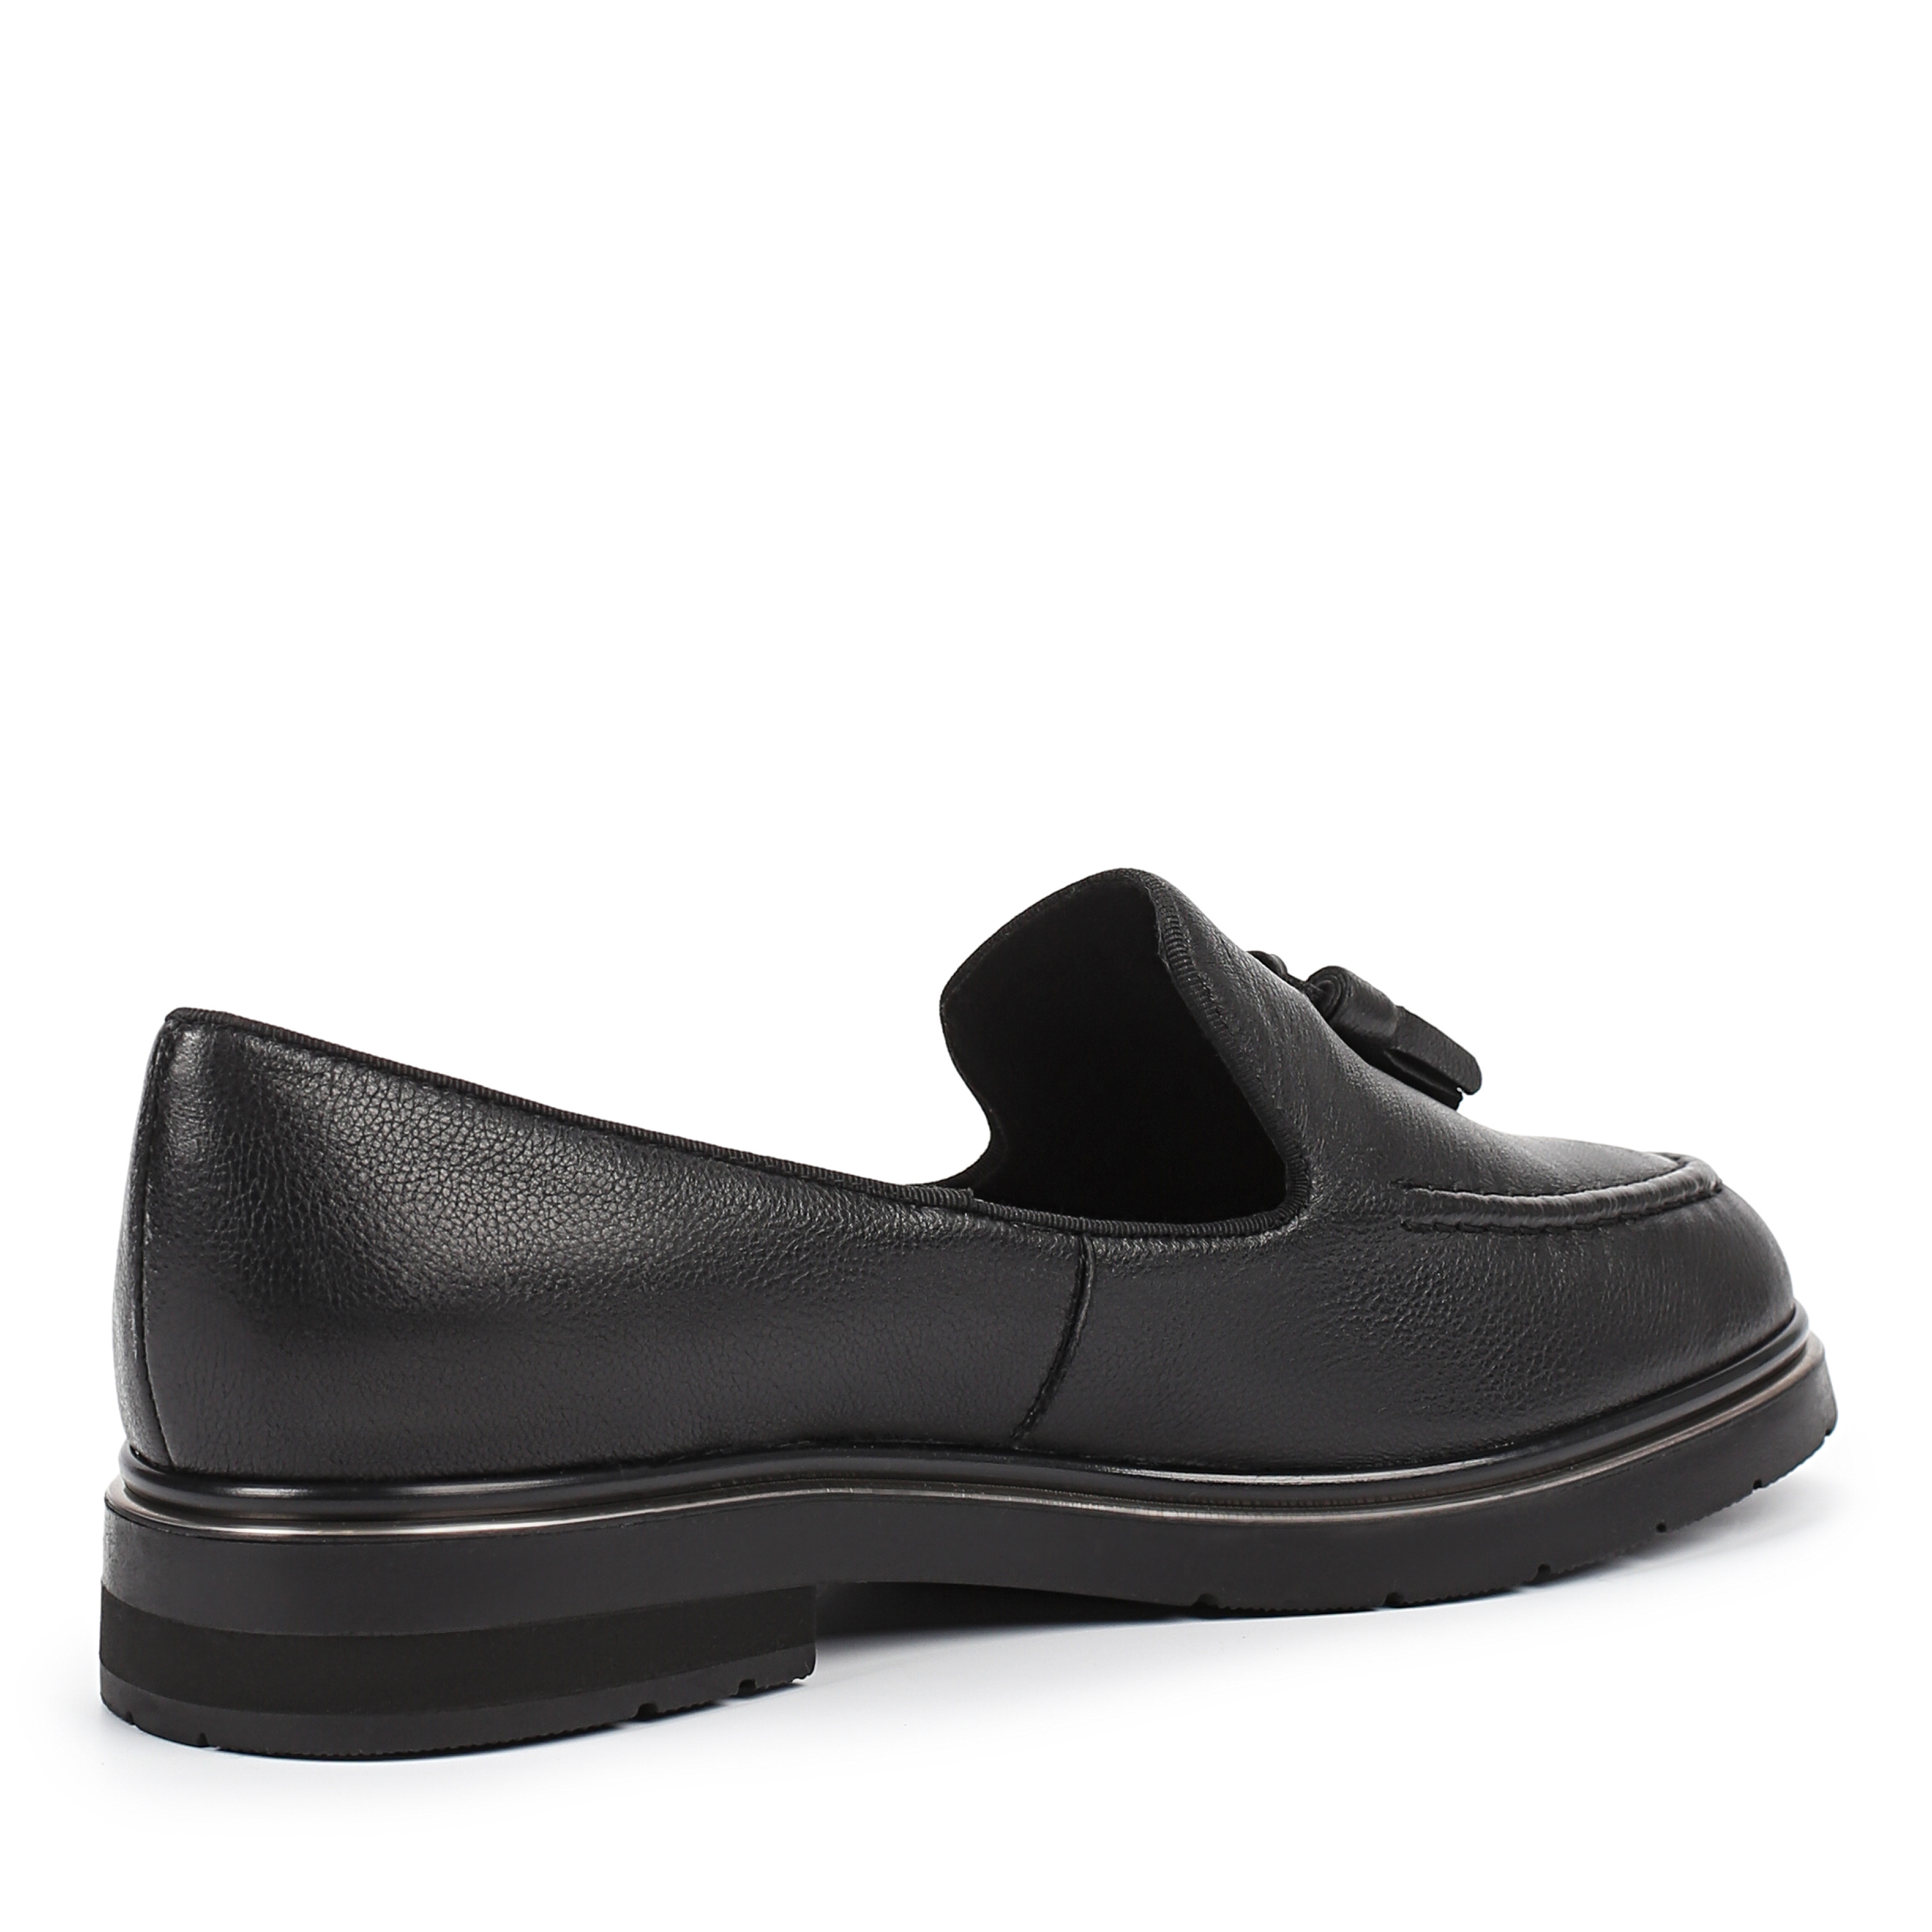 Туфли Thomas Munz 233-516B-2102, цвет черный, размер 39 - фото 3